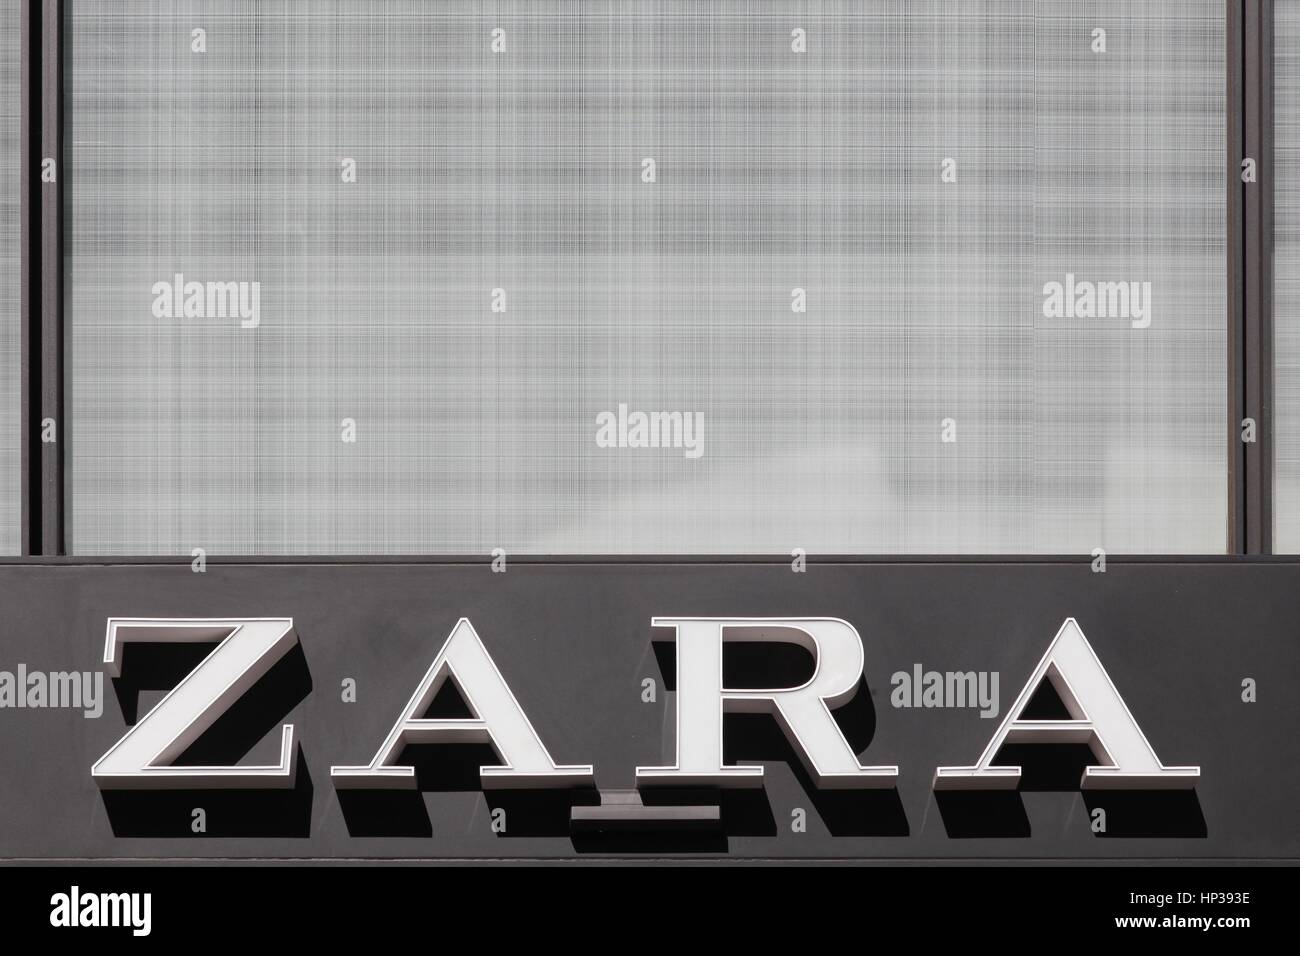 Lyon, Frankreich - 15. August 2016: Zara-Logo an der Wand. Zara ist ein spanisches Kleidung und Accessoires-Händler mit Sitz in Arteixo, Spanien Stockfoto